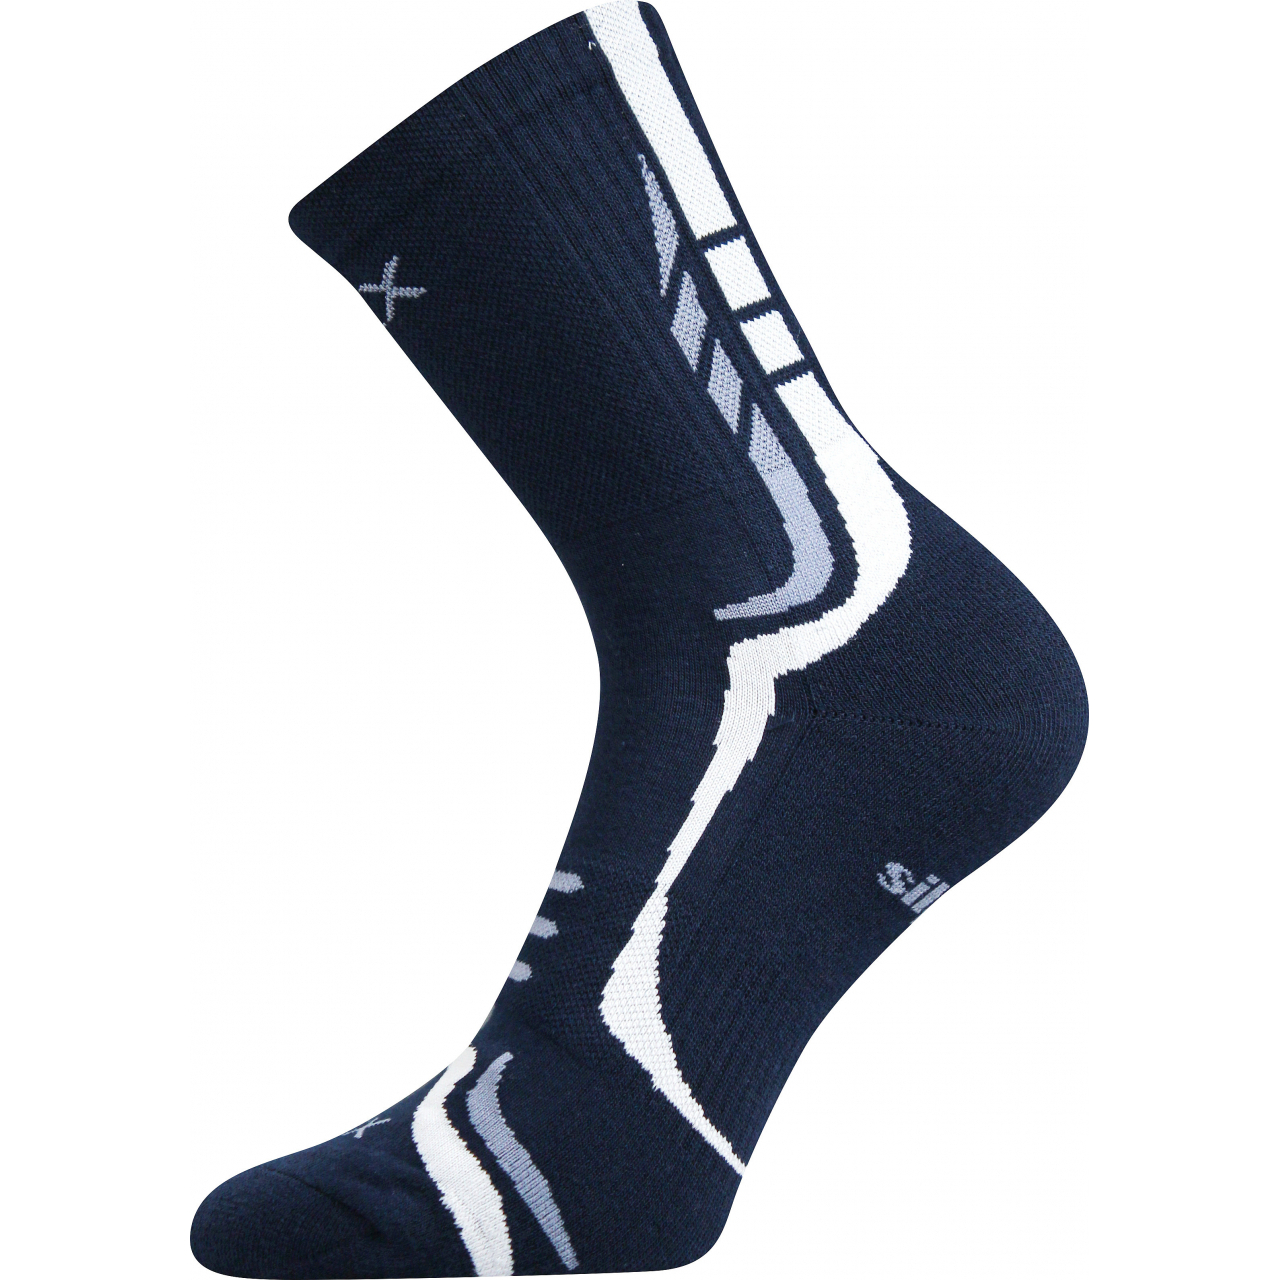 Ponožky unisex sportovní Voxx Thorx - navy-bílé, 47-50